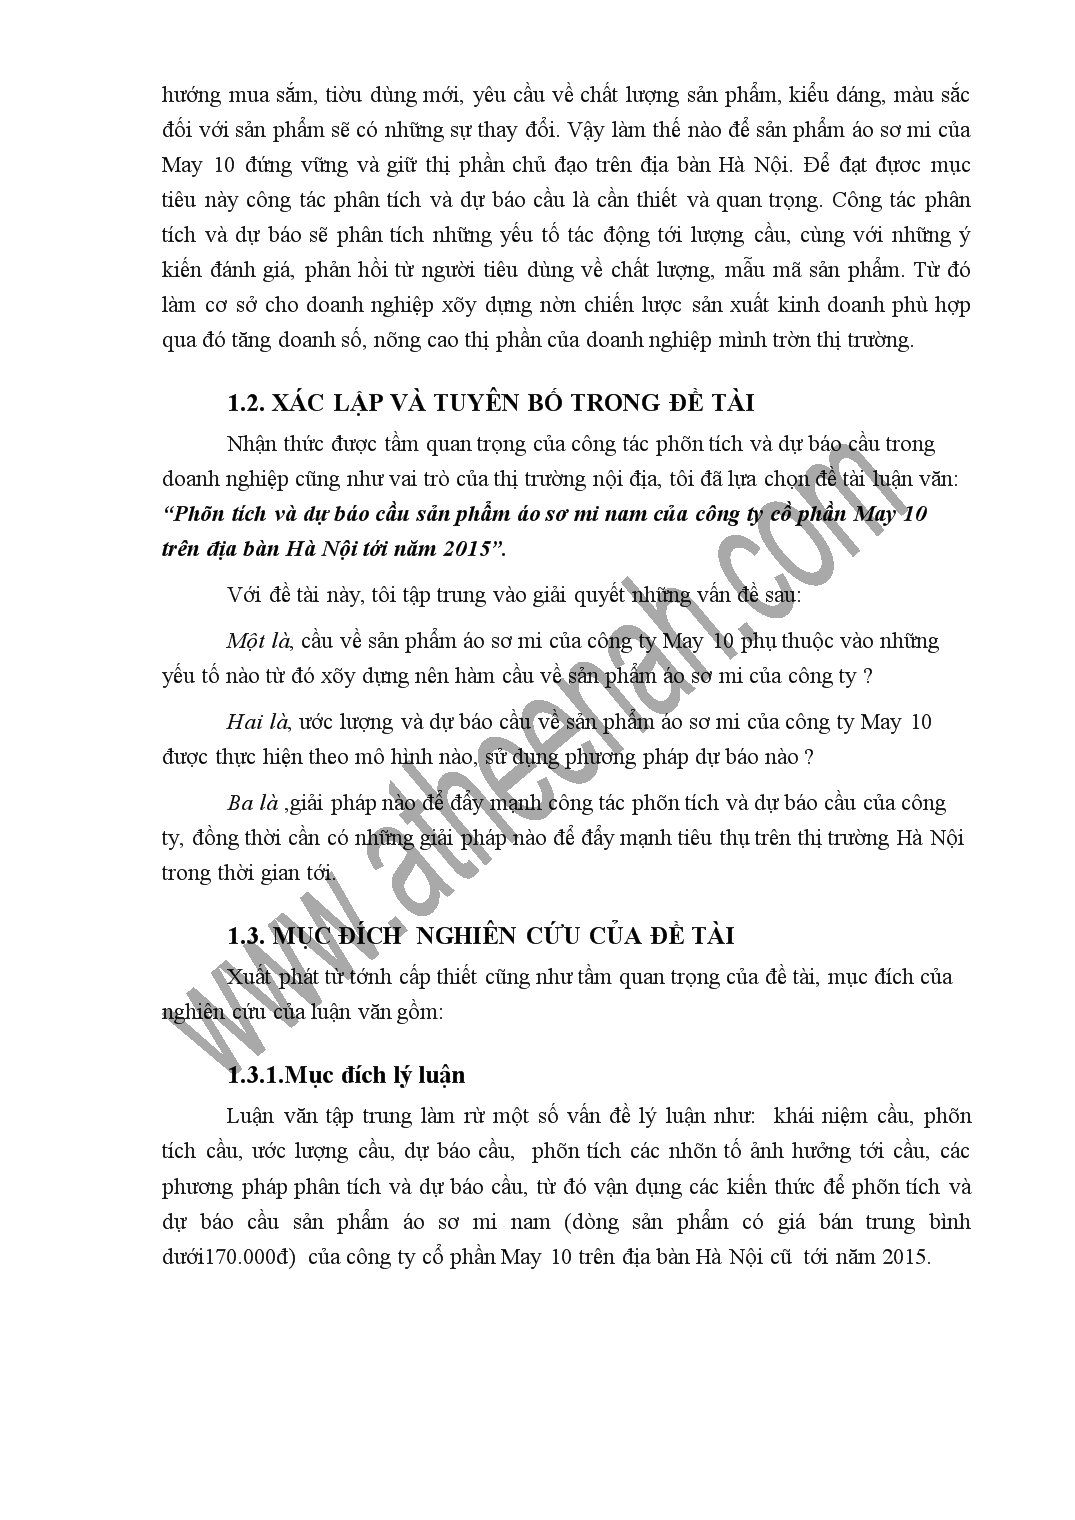 Luận văn Phân tích và dự báo cầu sản phẩm áo sơ mi nam của công ty cổ phần May 10 trên địa bàn Hà Nội tới năm 2015 trang 2